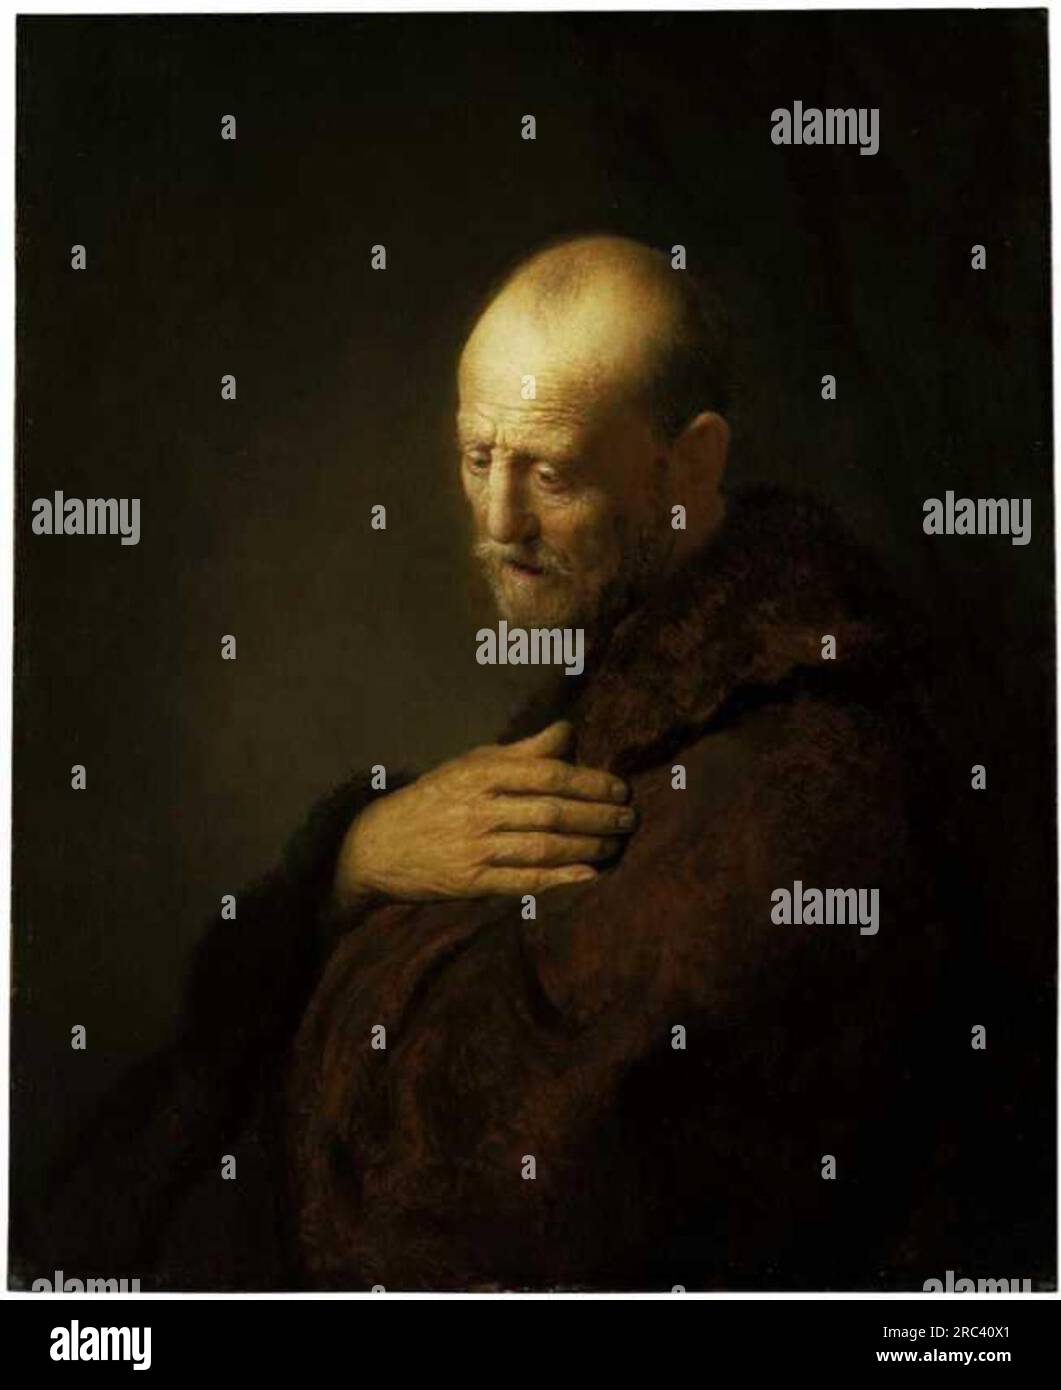 Vecchio in preghiera di Rembrandt Foto Stock